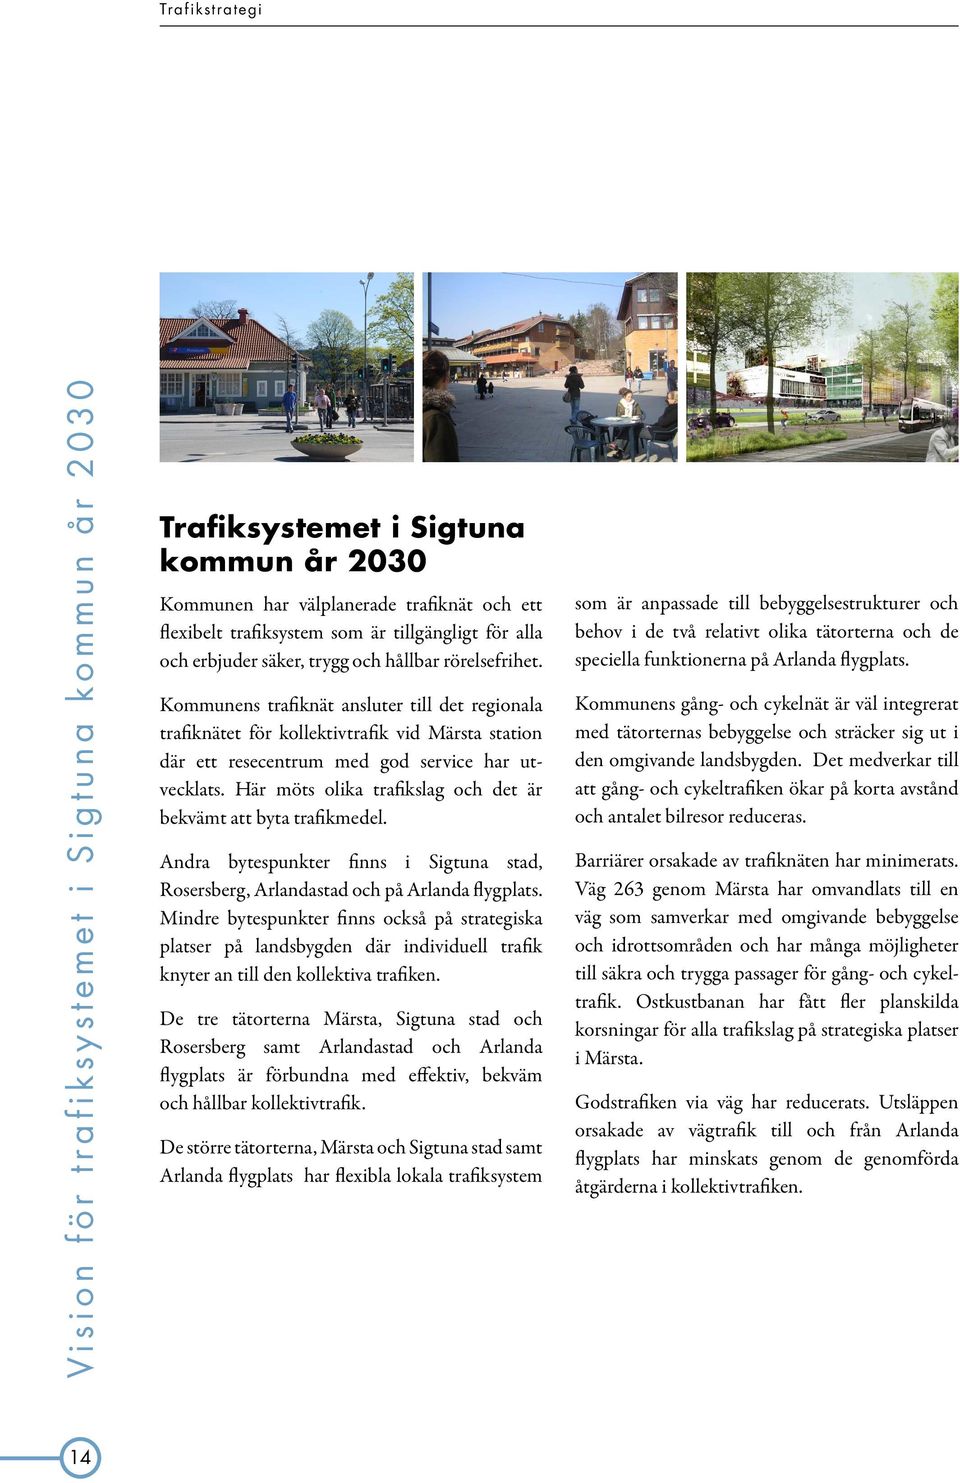 Kommunens trafiknät ansluter till det regionala trafiknätet för kollektivtrafik vid Märsta station där ett resecentrum med god service har utvecklats.